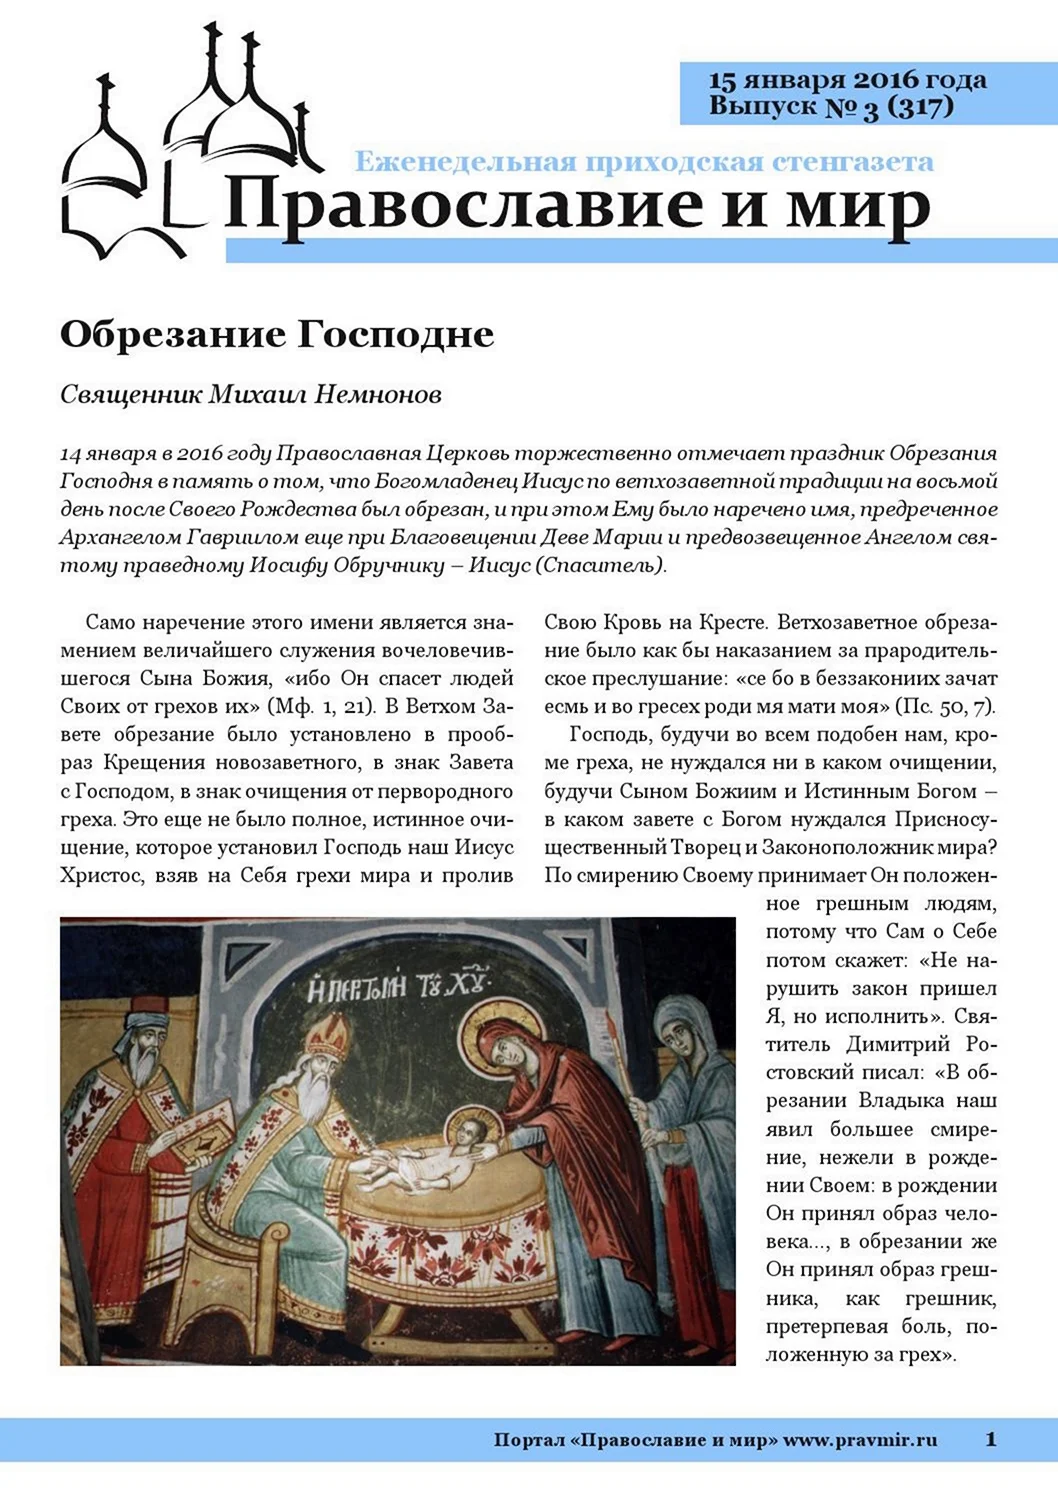 Праздник обрезания Господня у православных. Поздравление